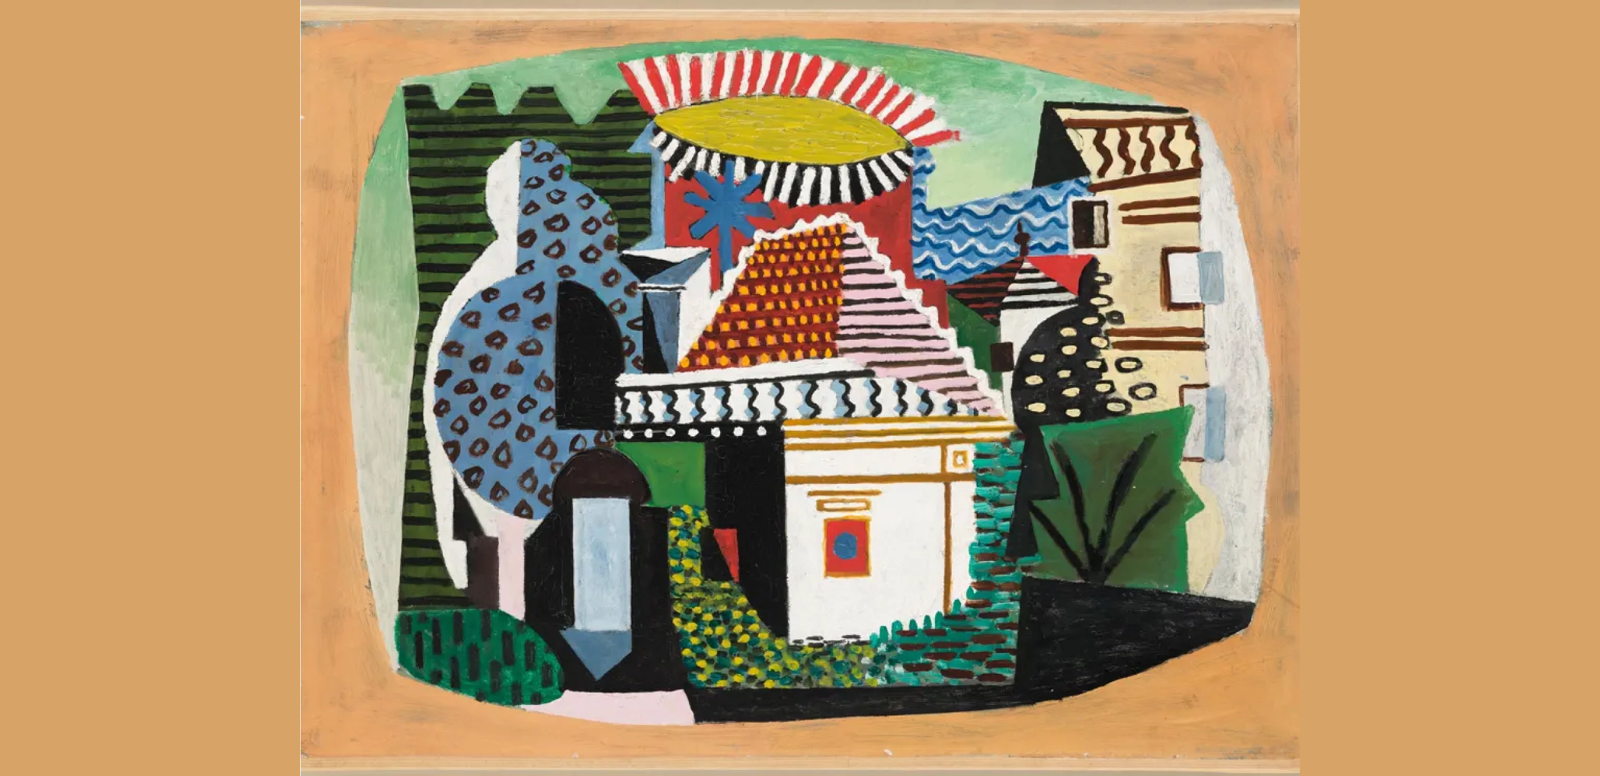 Pablo Picasso, "Paysage de Juan-les-Pins", 1920